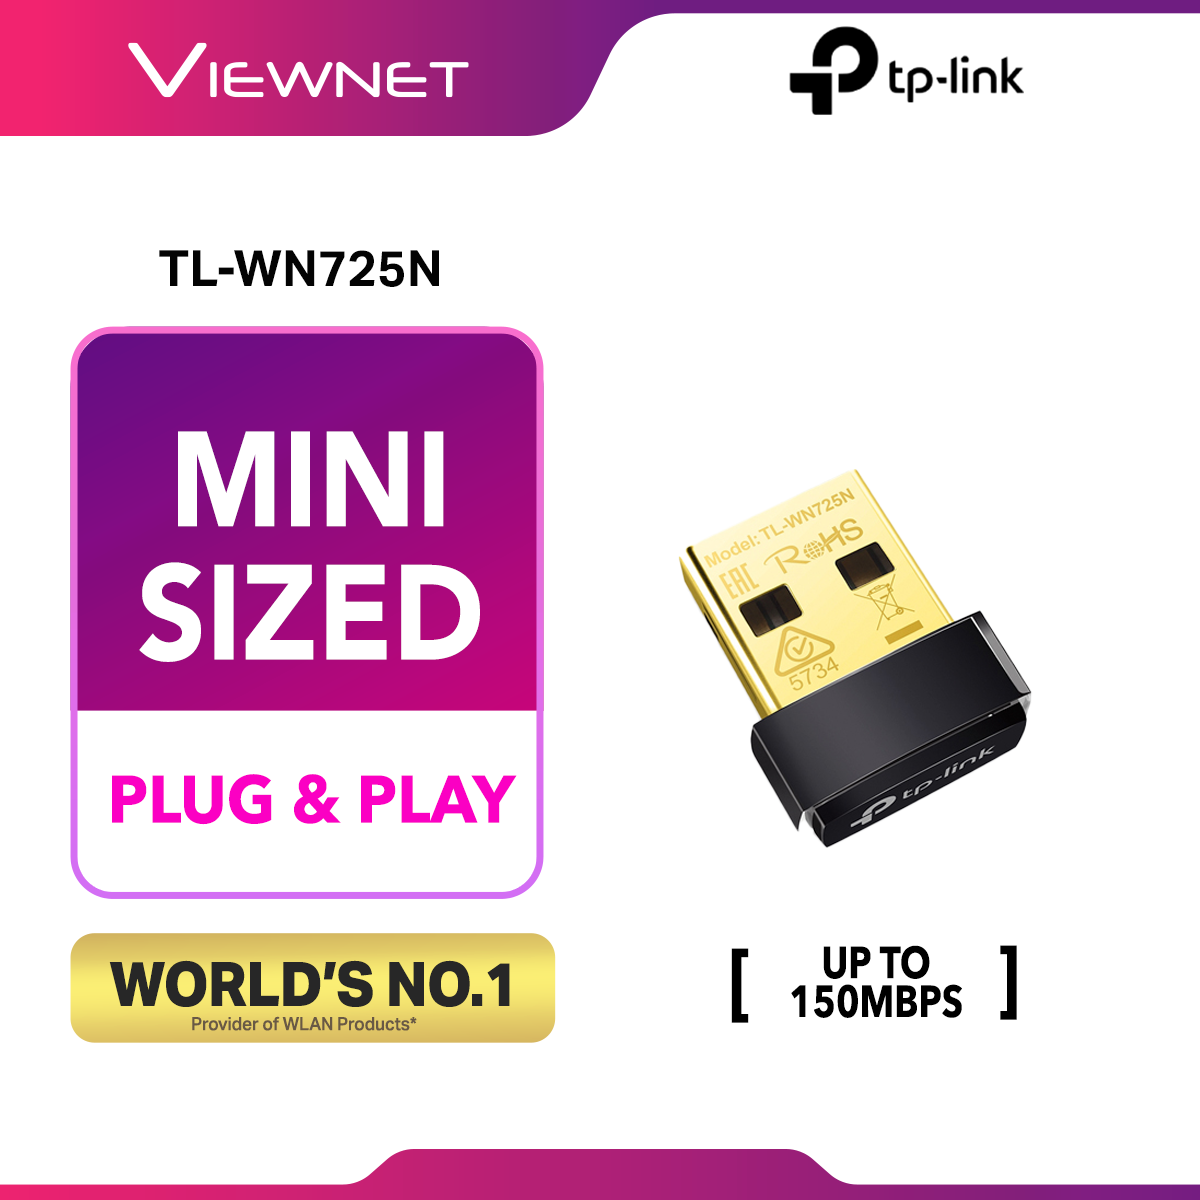 TP LINK TL-WN725N 150MBPS WIRELESS N NANO USB ADAPTER (USB 2.0)